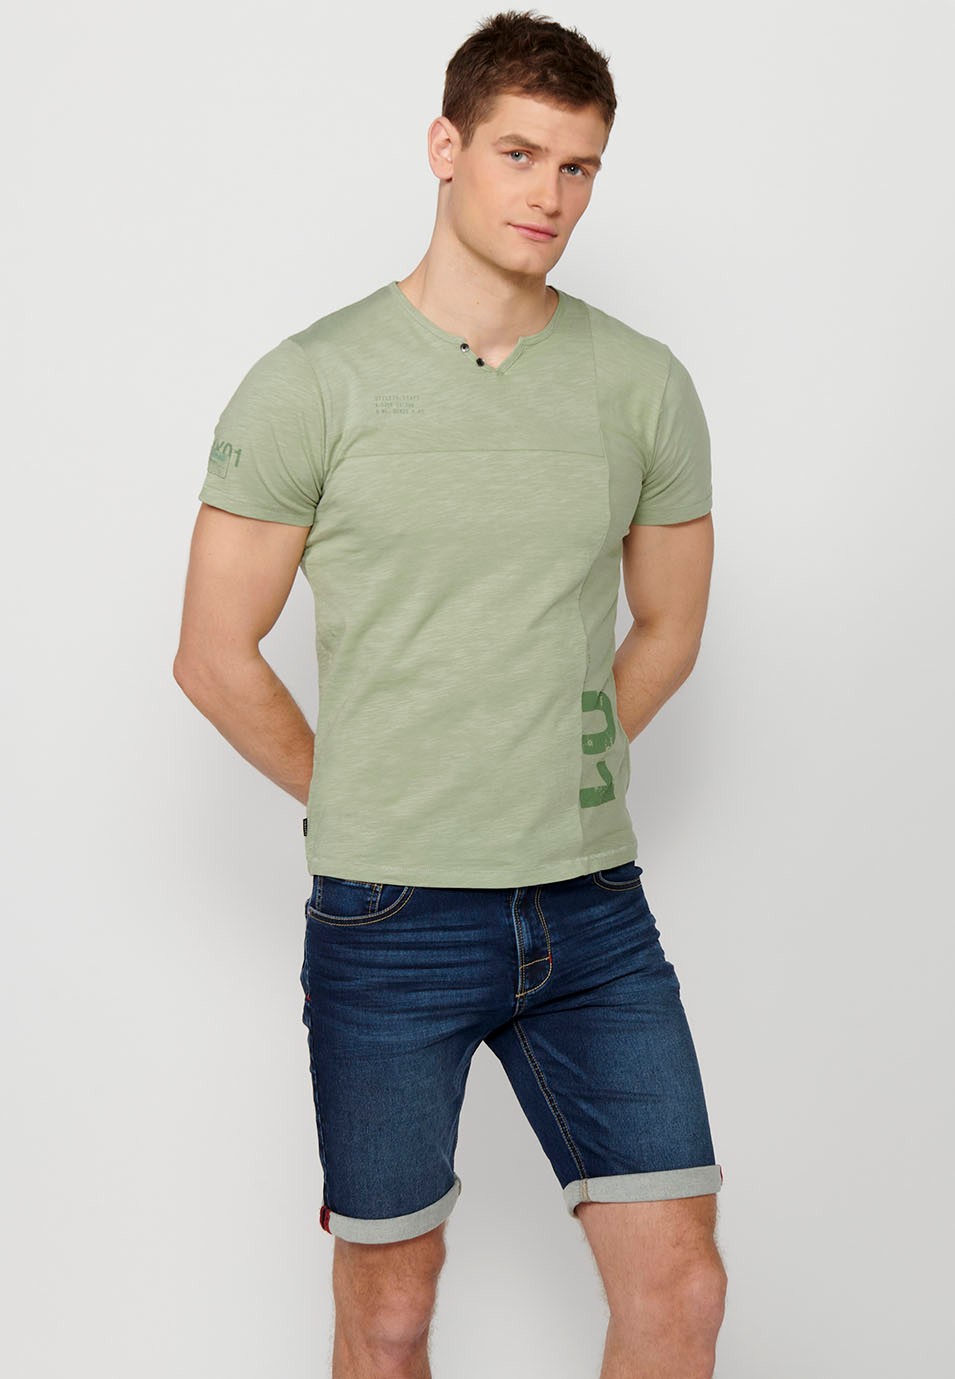 Kakhi Herren-T-Shirt aus Baumwolle mit kurzen Ärmeln, Rundhalsausschnitt und Knopfleiste